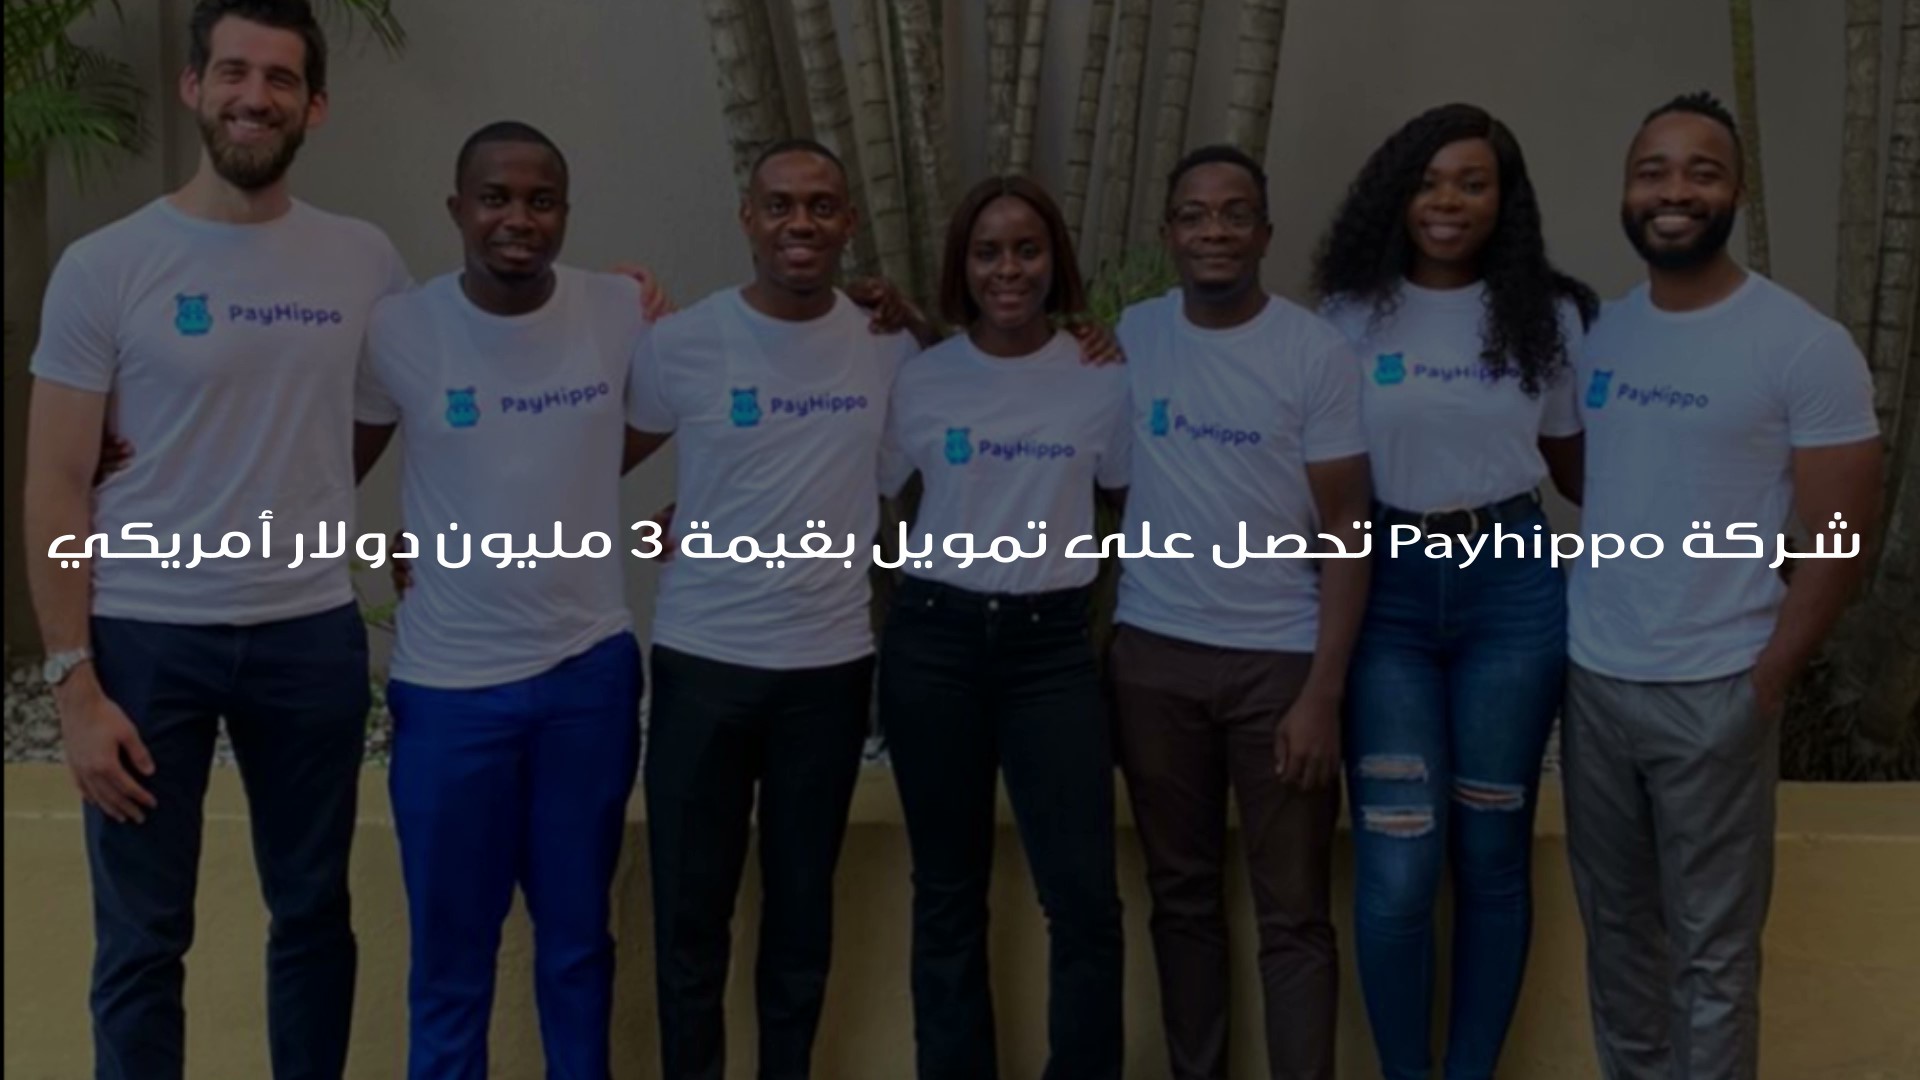 شركة Payhippo تحصل على تمويل بقيمة 3 مليون دولار أمريكي ، أغلقت شركة الإقراض النيجيرية Payhippo جولة تمويل أولية بقيمة 3 ملايين دولار أمريكي لتعزيز قدراتها التكنولوجية لدعم الشركات الصغيرة في نيجيريا بحلول مبتكرة لفتح مصادر رأس المال لعملائها.